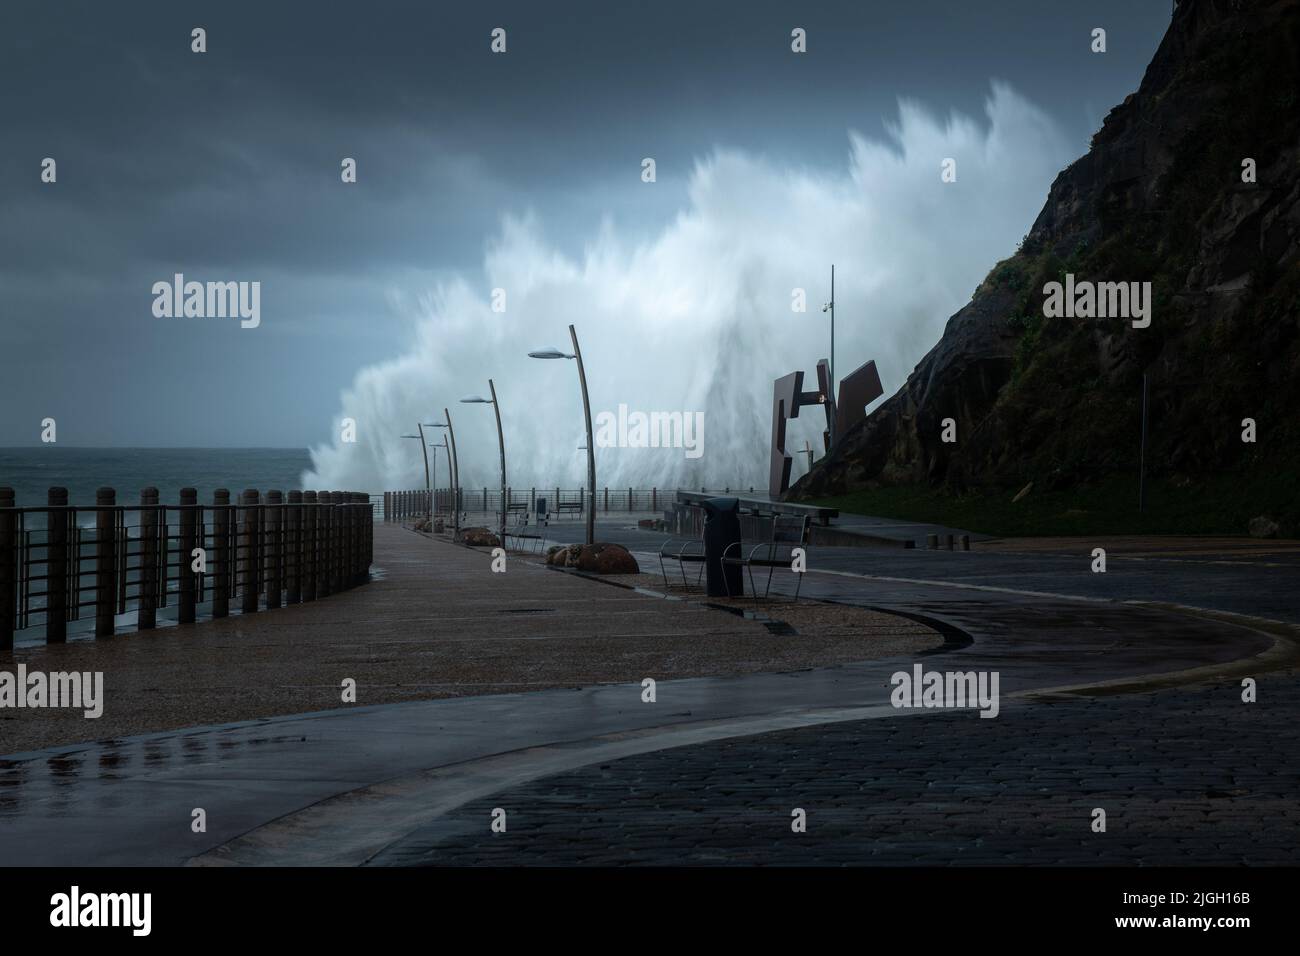 Vagues se brisant sur la nouvelle Promenade de San Sebastian pendant une tempête, Espagne Banque D'Images